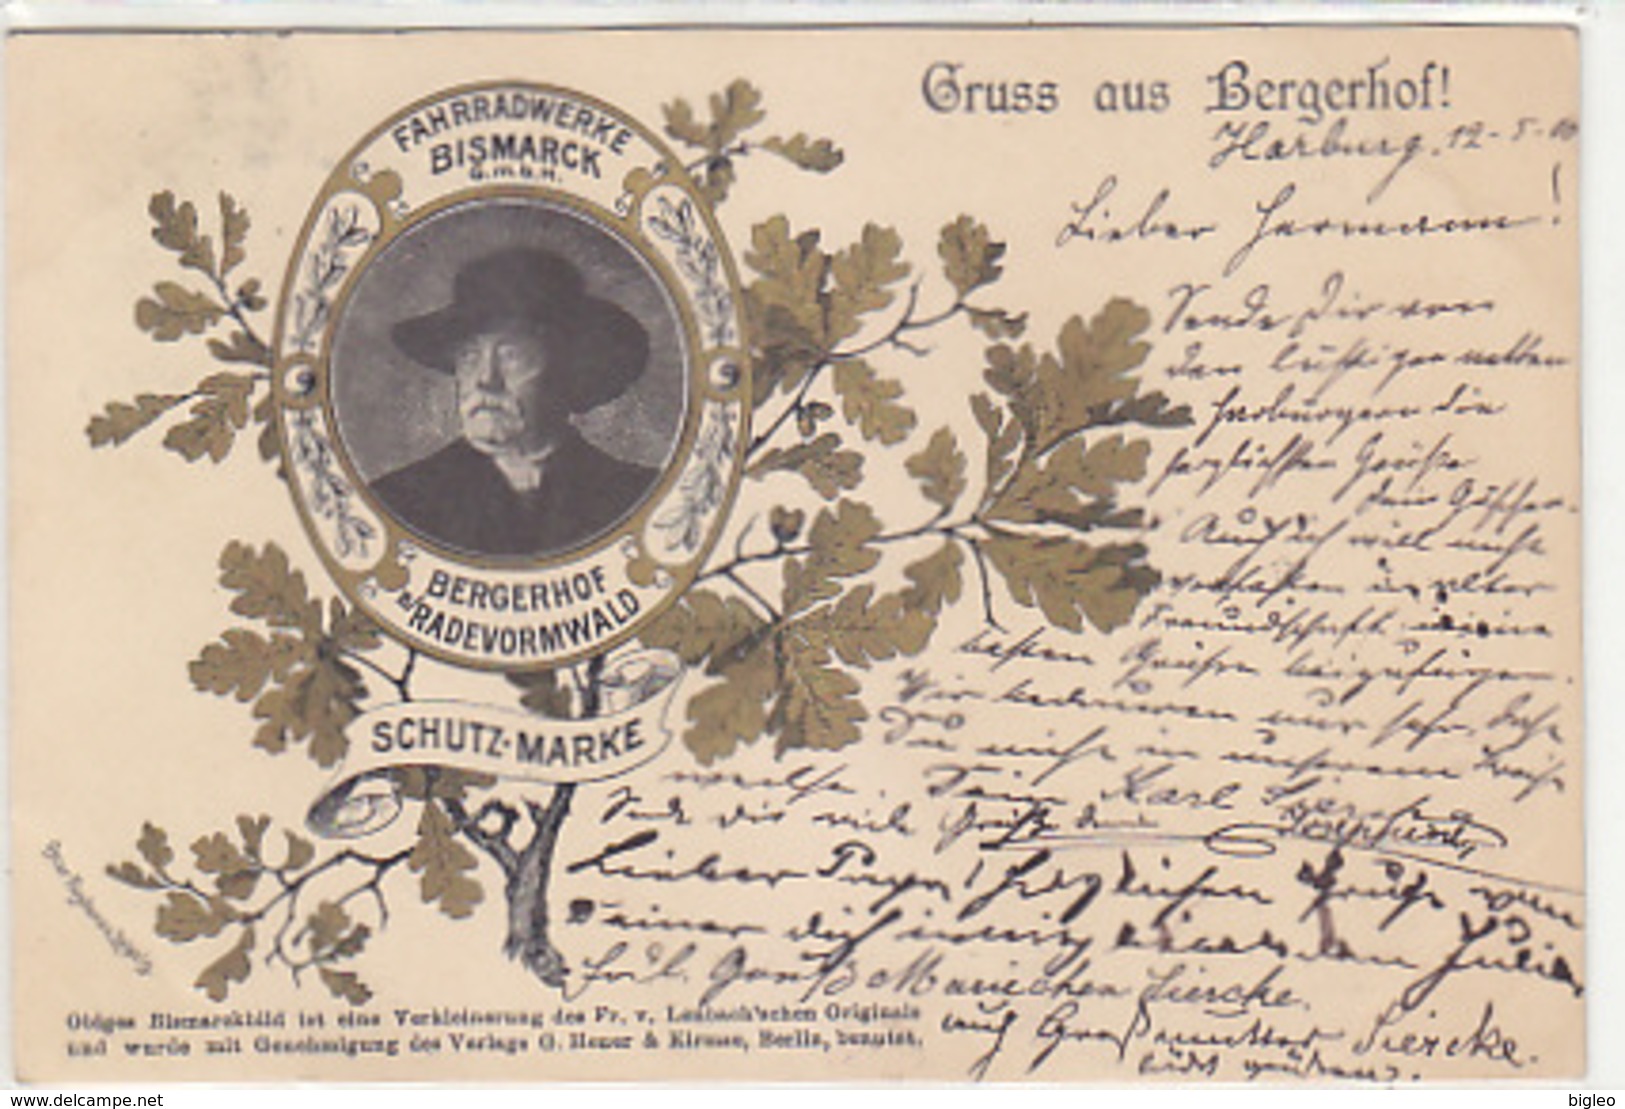 Gruss Aus Bergerhof - Fahrradwerke Bismarck GmbH - 1900    (A-92-180613) - Publicité